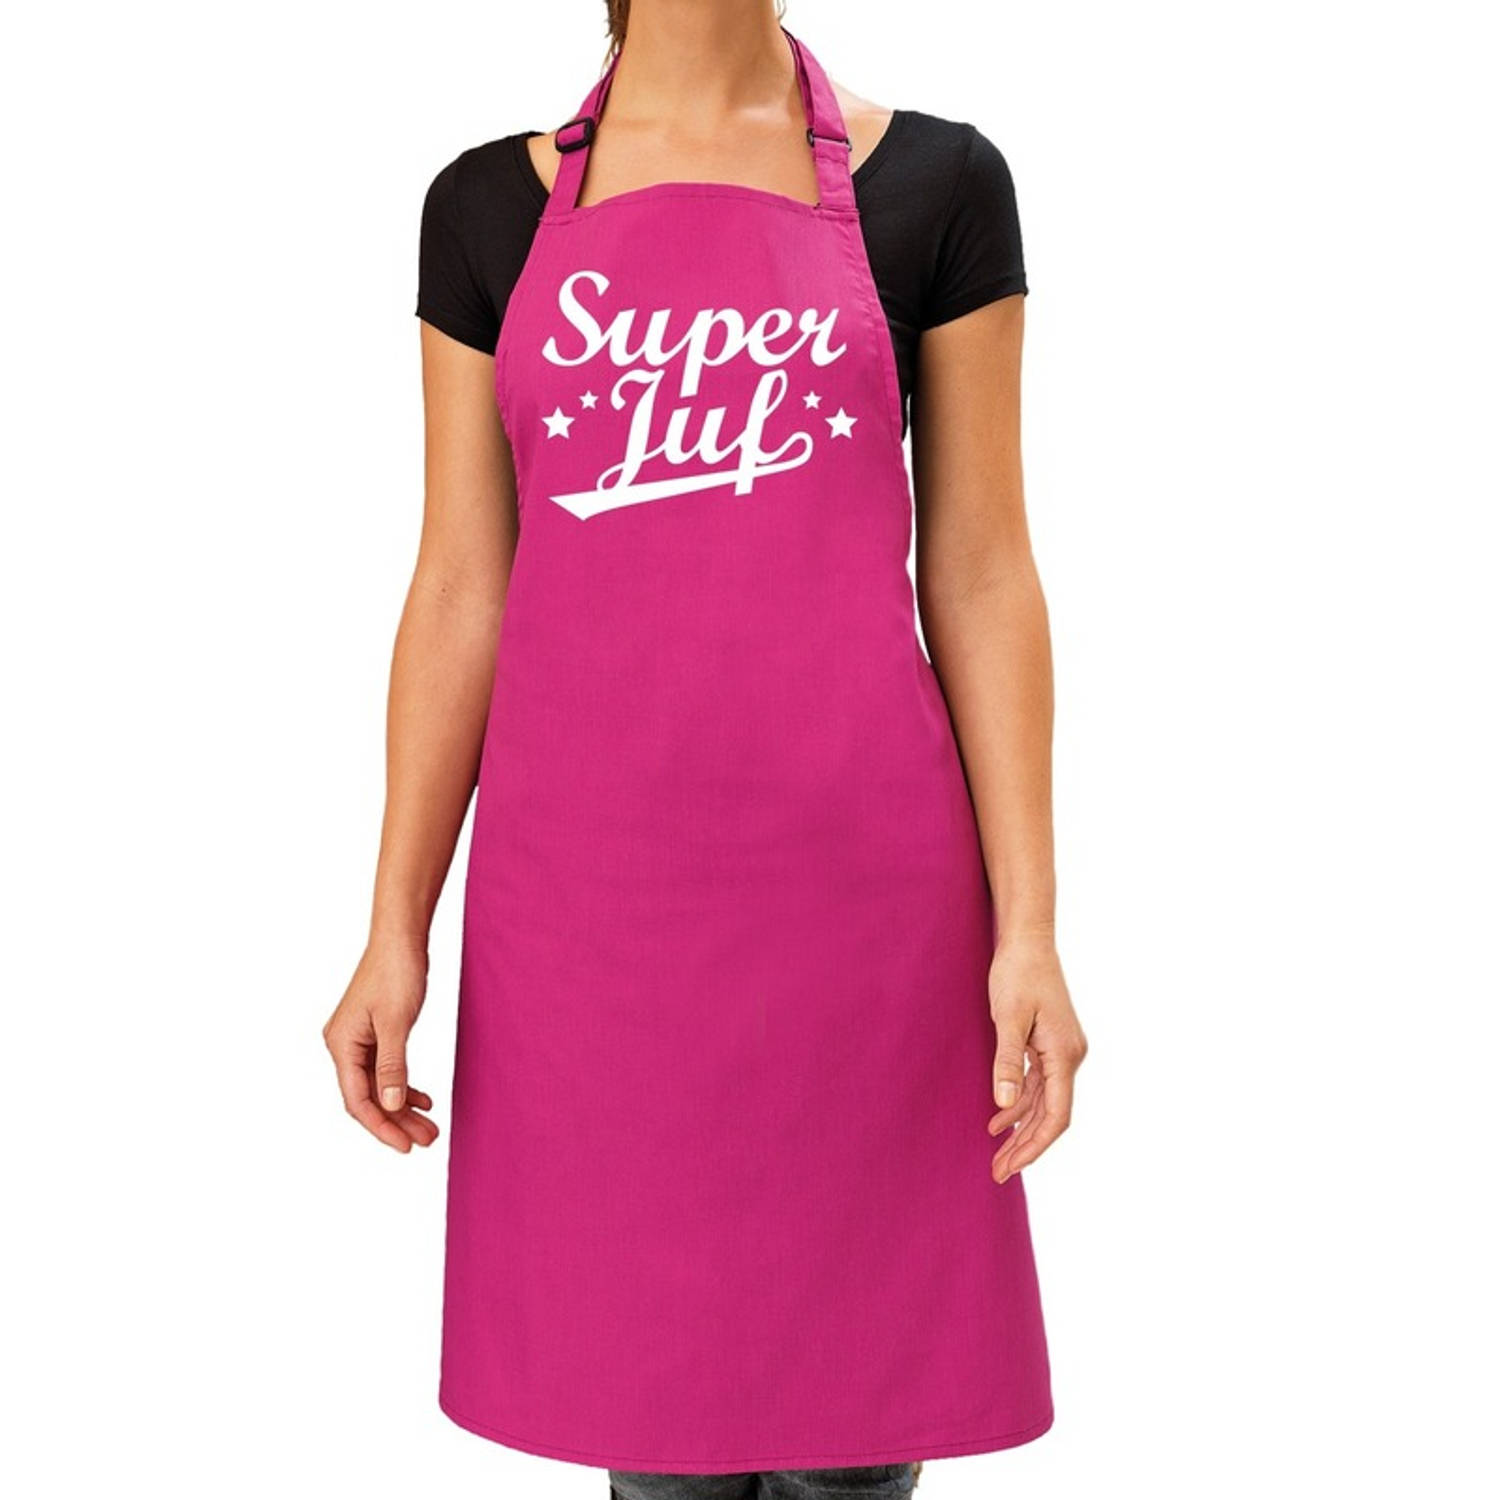 Super juf bbq-keuken schort roze voor dames Einde schooljaar- jufdag cadeau Feestschorten